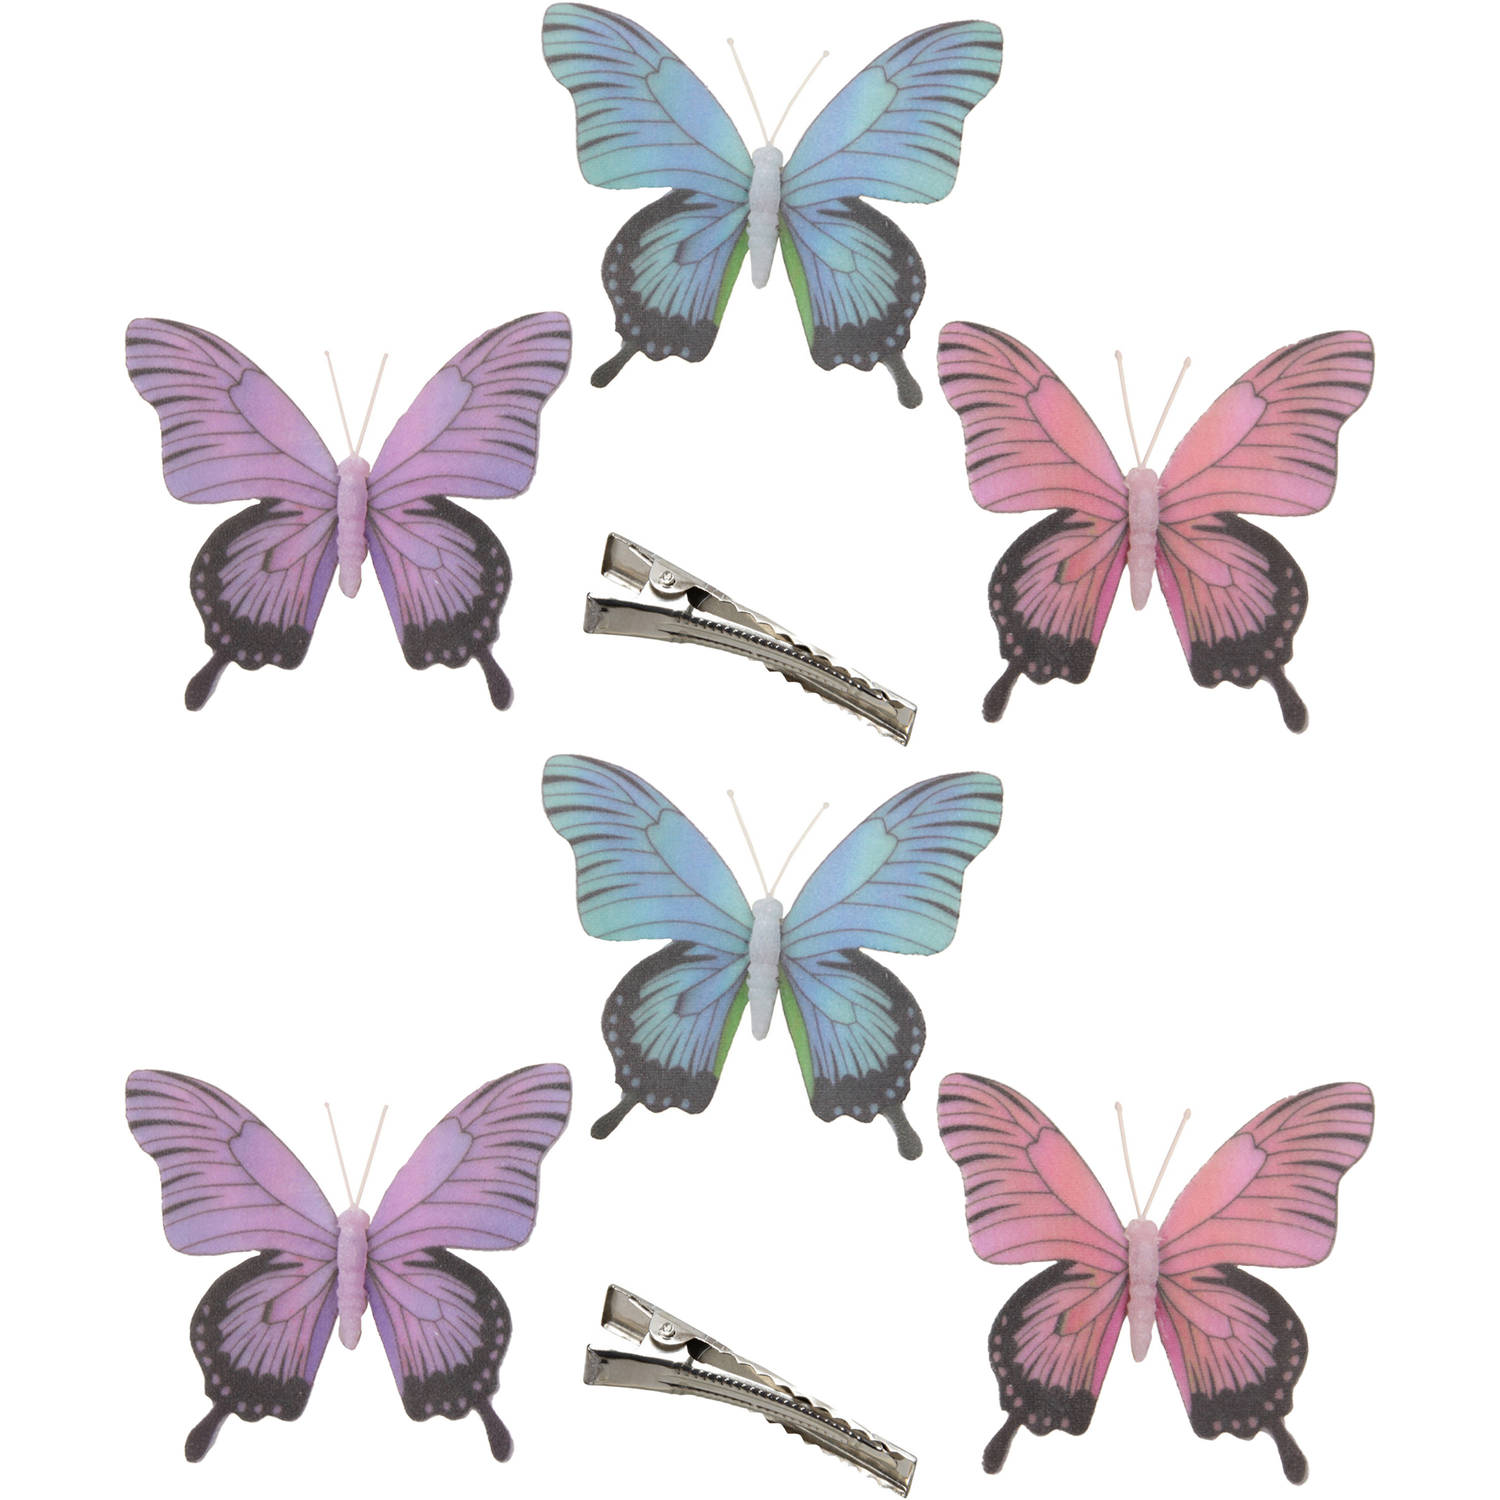 6x Stuks Decoratie Vlinders Op Clip Paars-blauw-roze 12 Cm Hobbydecoratieobject